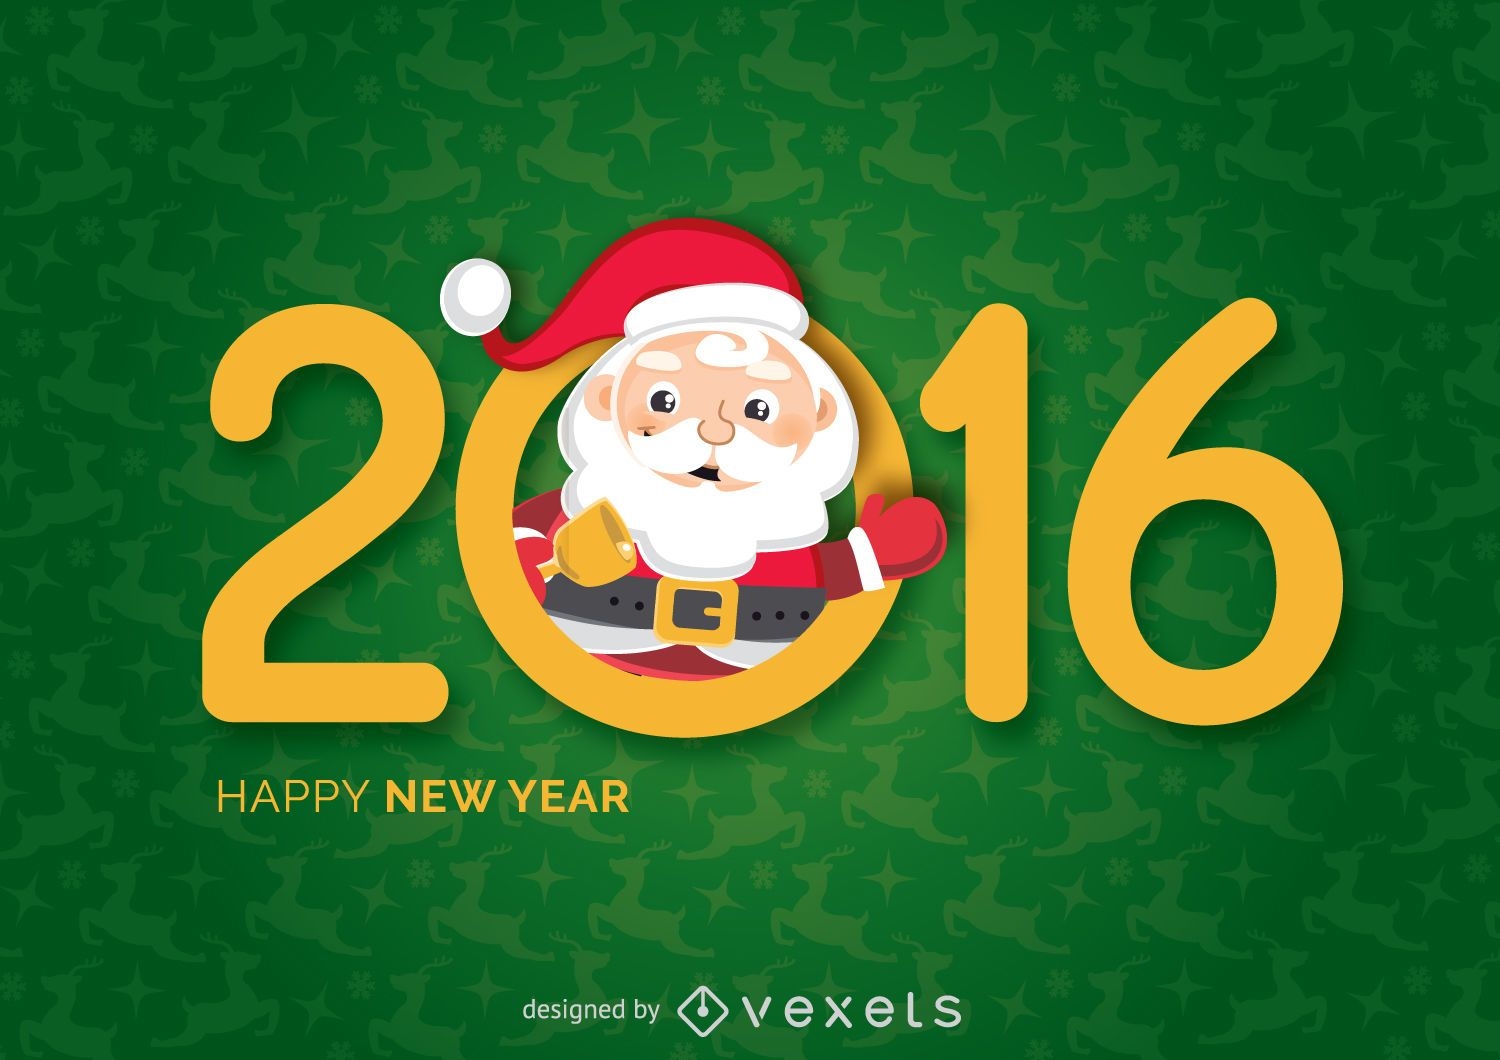 New Year 2016 Santa saying hello